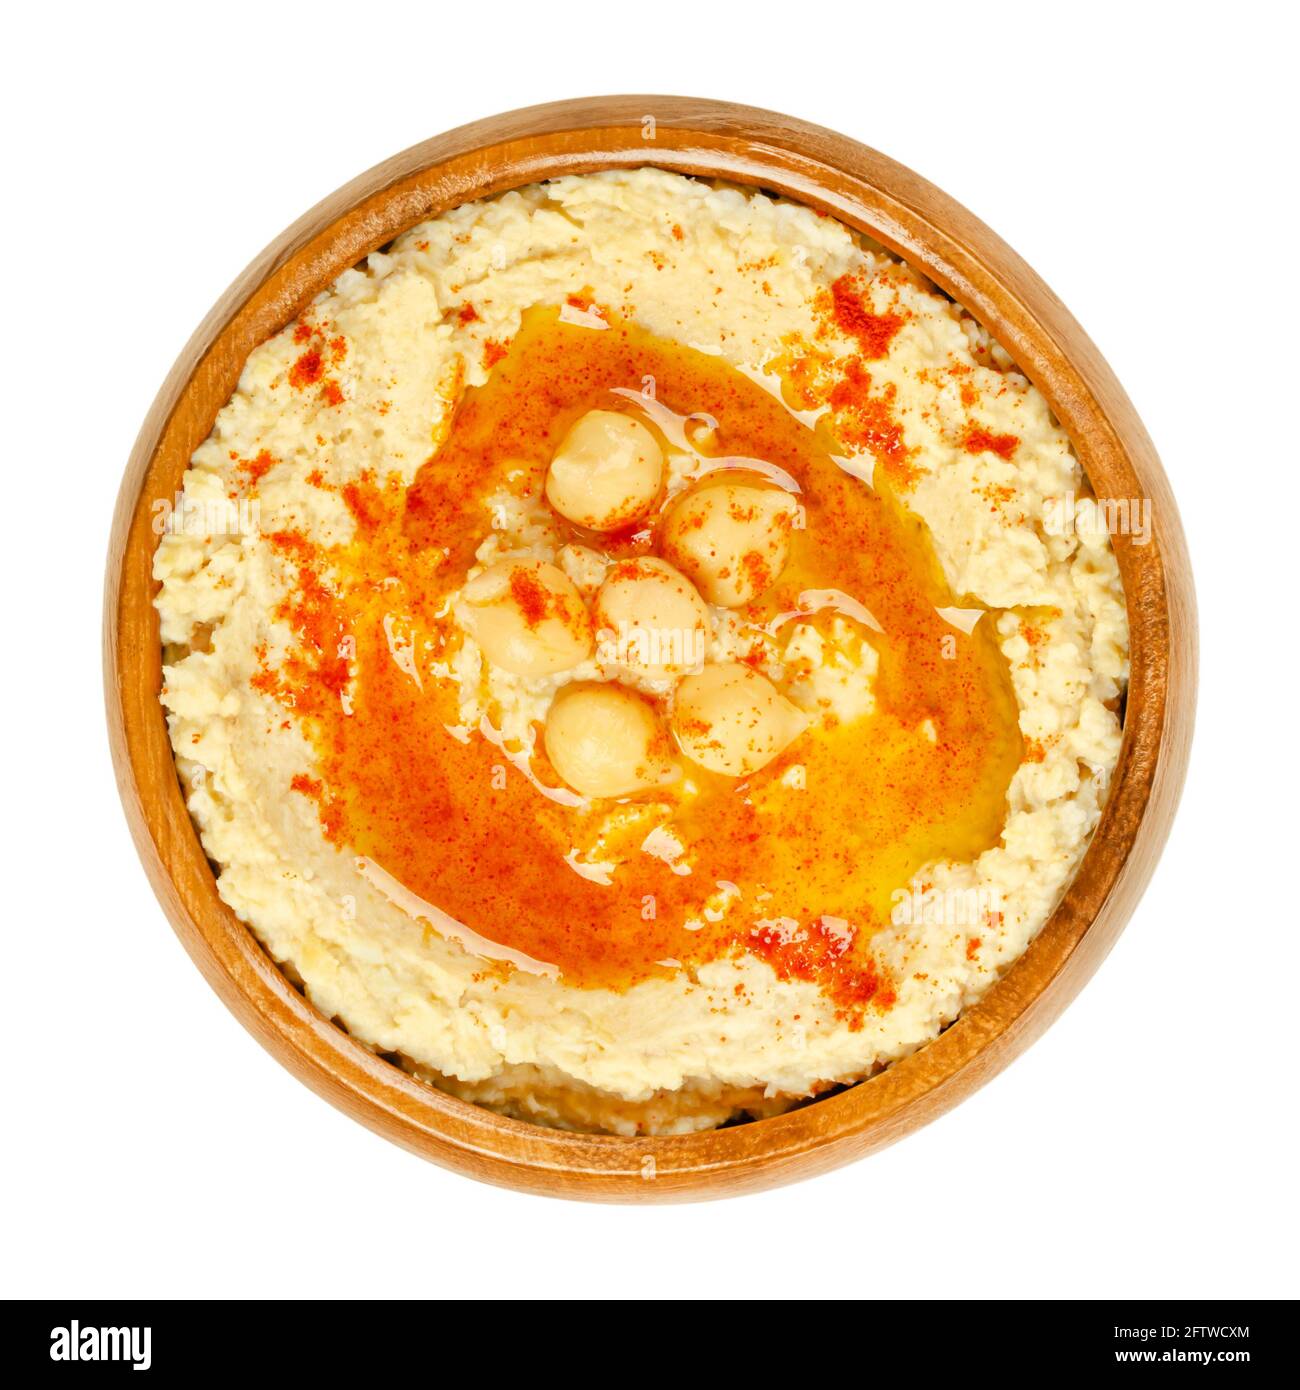 Trempez le houmous avec de la poudre de paprika et de l'huile, dans un bol en bois. Sauce, tartiner ou plat salé du Moyen-Orient à base de pois chiches cuits en purée. Banque D'Images